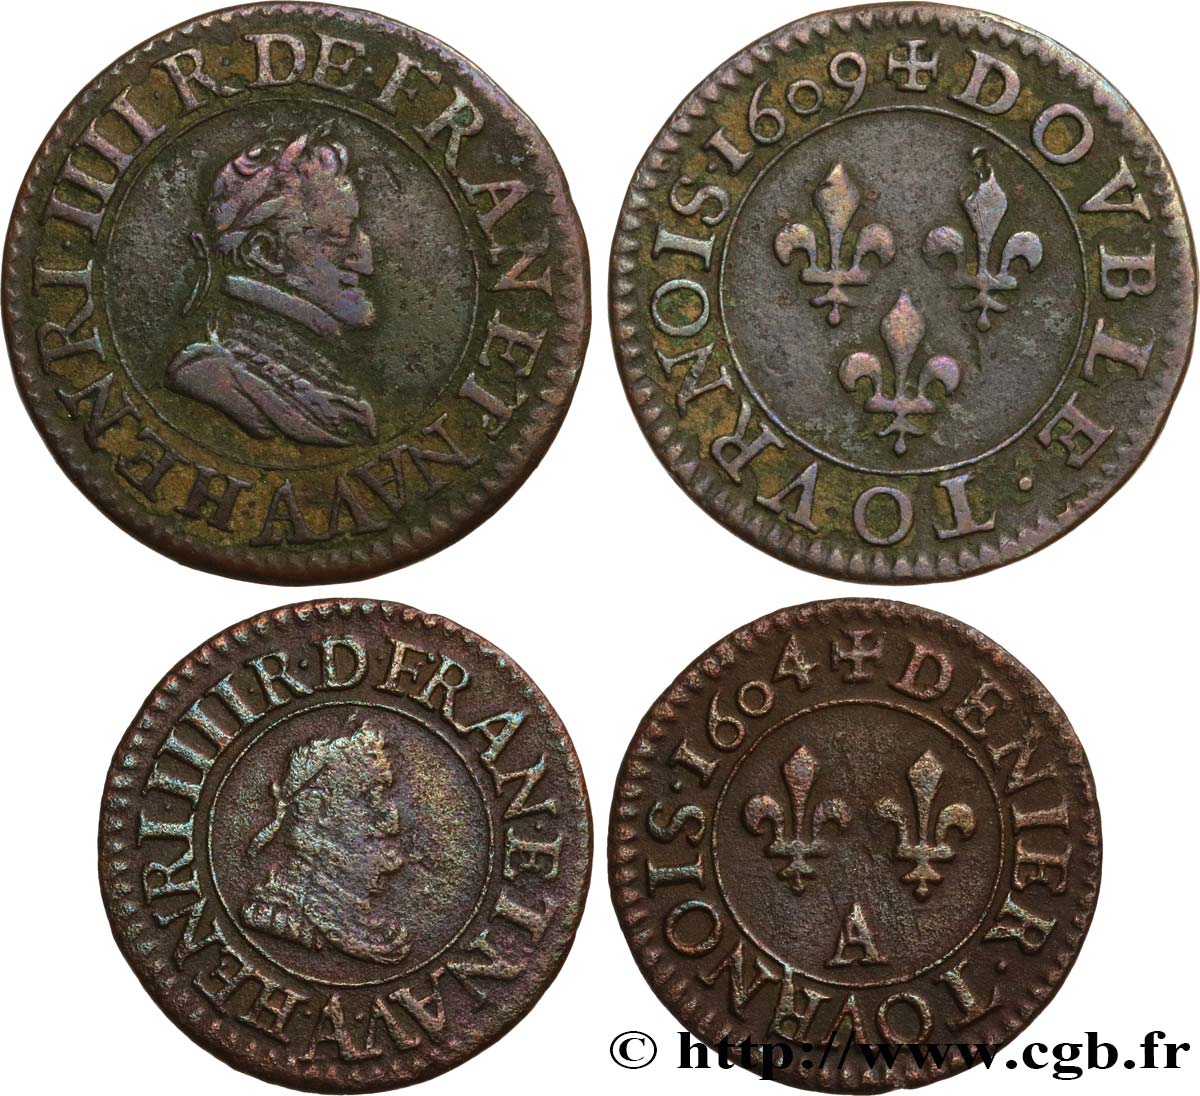 HENRY IV Lot de 2 monnaies royales n.d. s.l. fSS